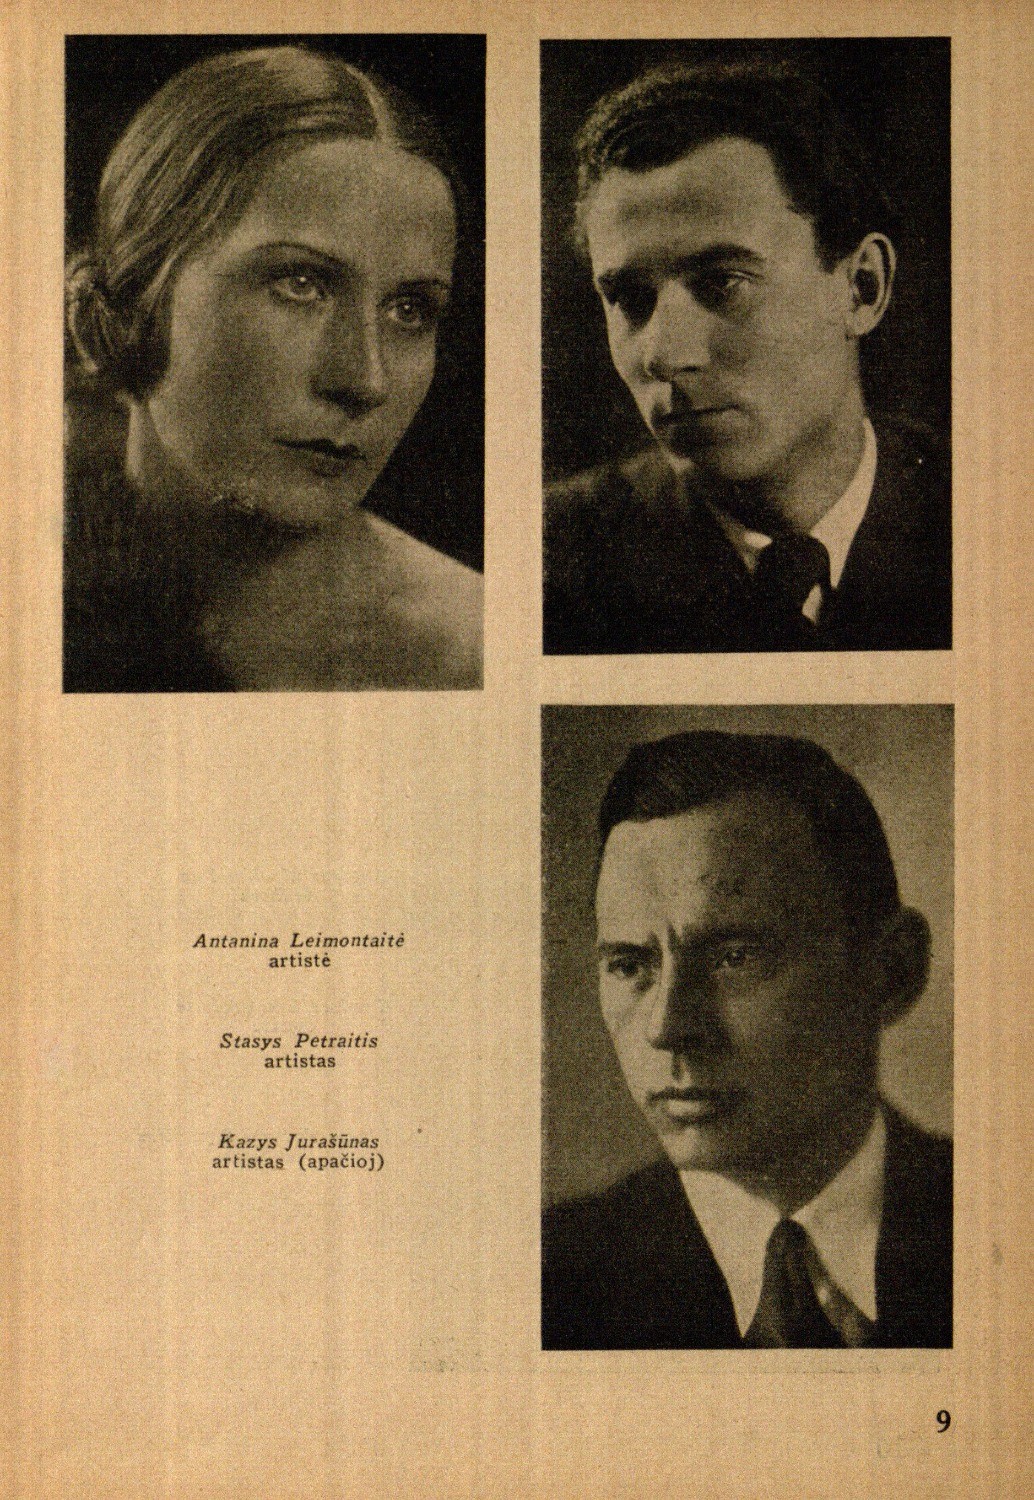 Antanina Leimontaitė, artistė, Stasys Petraitis, artistas, Kazys Jurašiūnas, artistas // Meno dienos. – 1936, Nr. 18, p. 9.